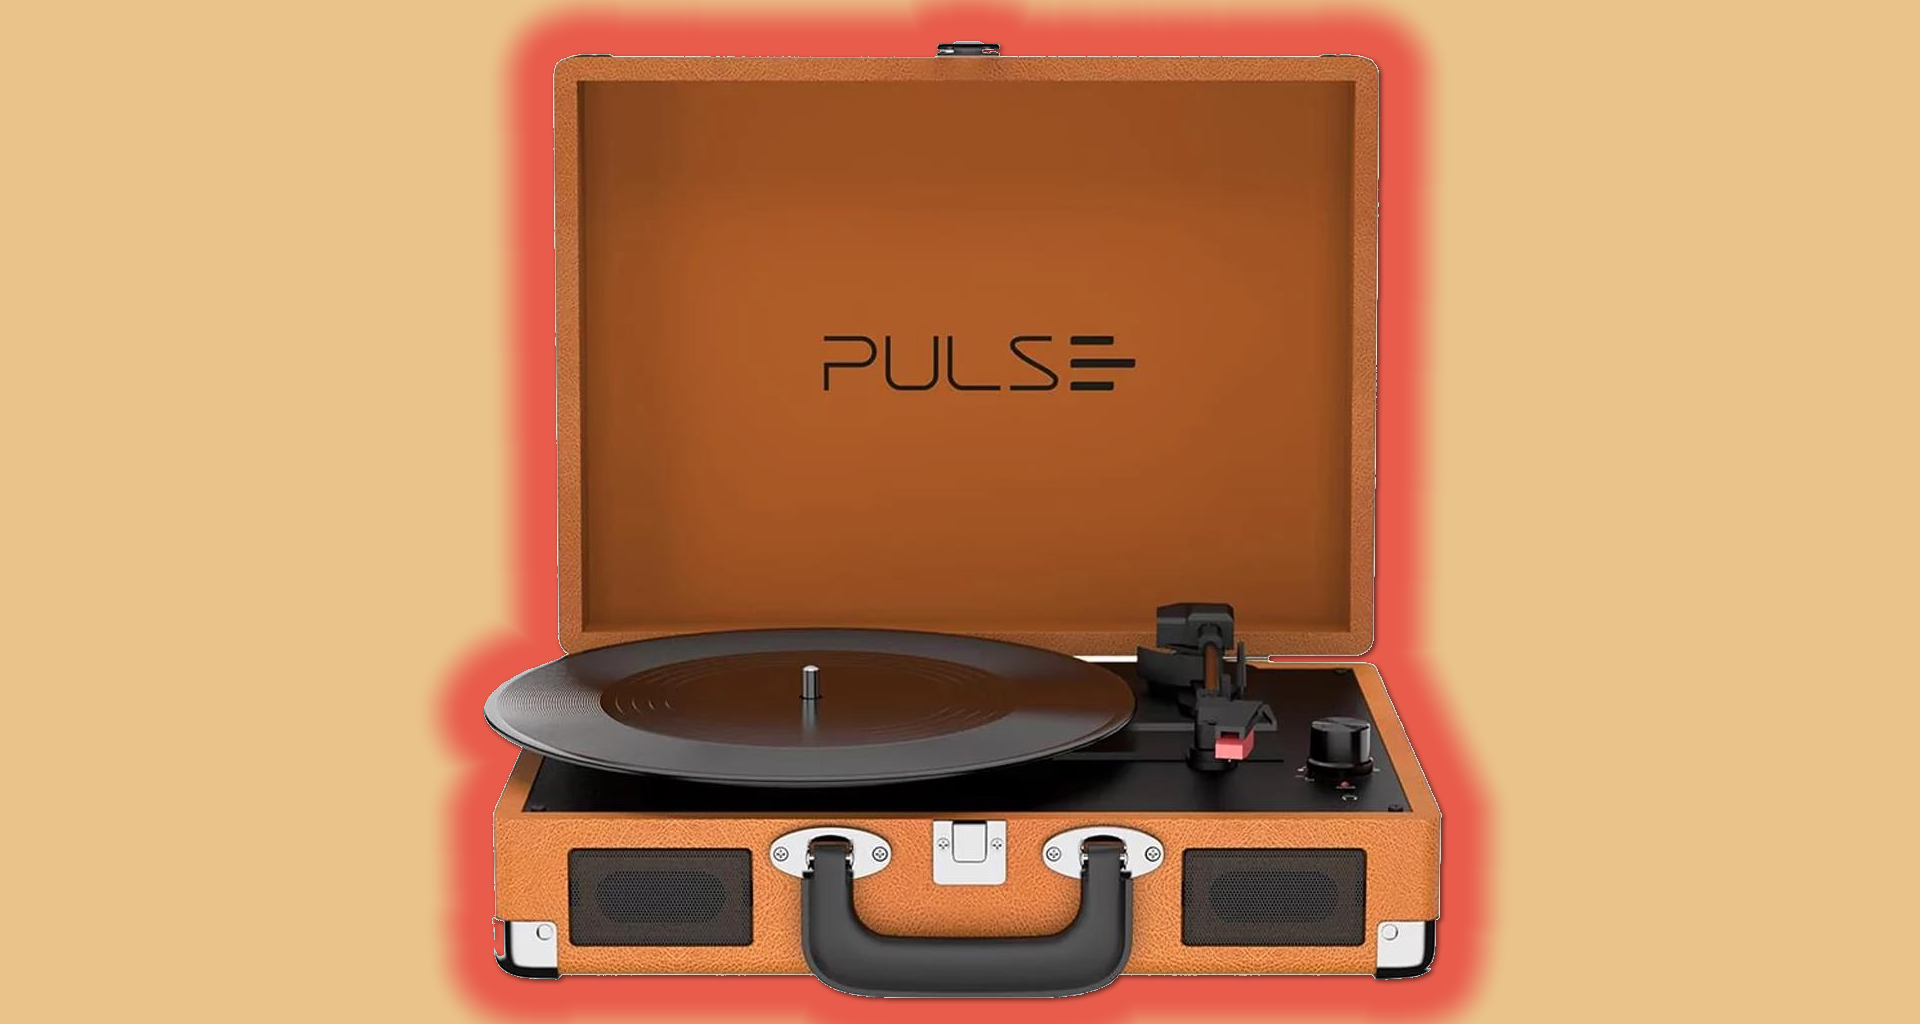 Anders Lach Druipend Pulse lanceert drie retro platenspelers en breidt audioportfolio uit